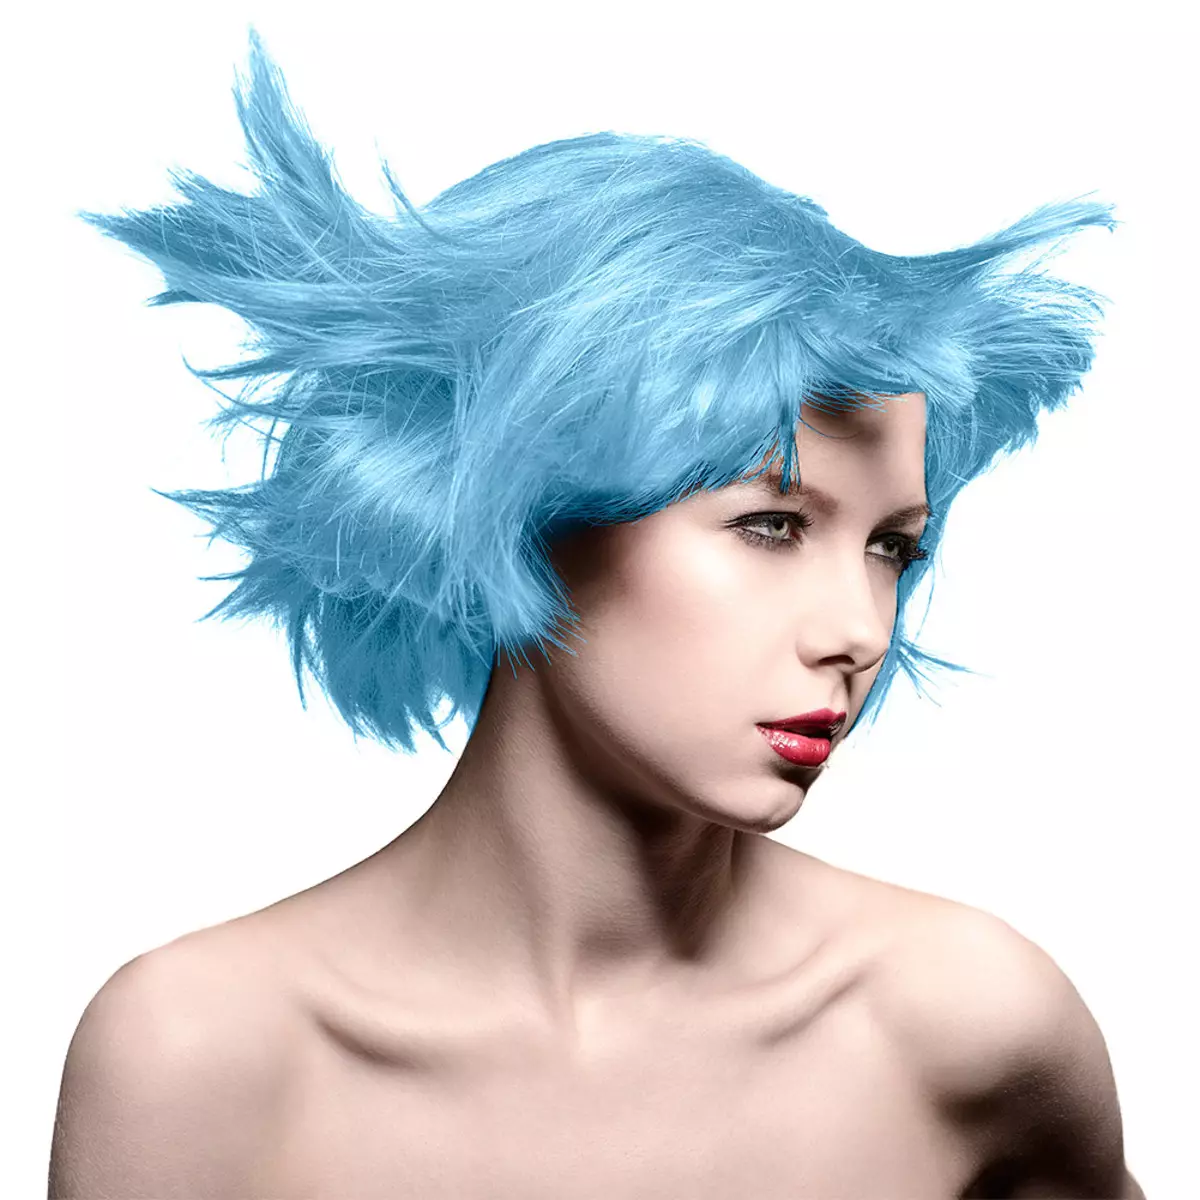 رنگ مو آبی: مرور کلی رنگ های مقاوم در برابر رنگ با سوزن آبی، از آبی روشن به سایه های سیاه و سفید 5402_28